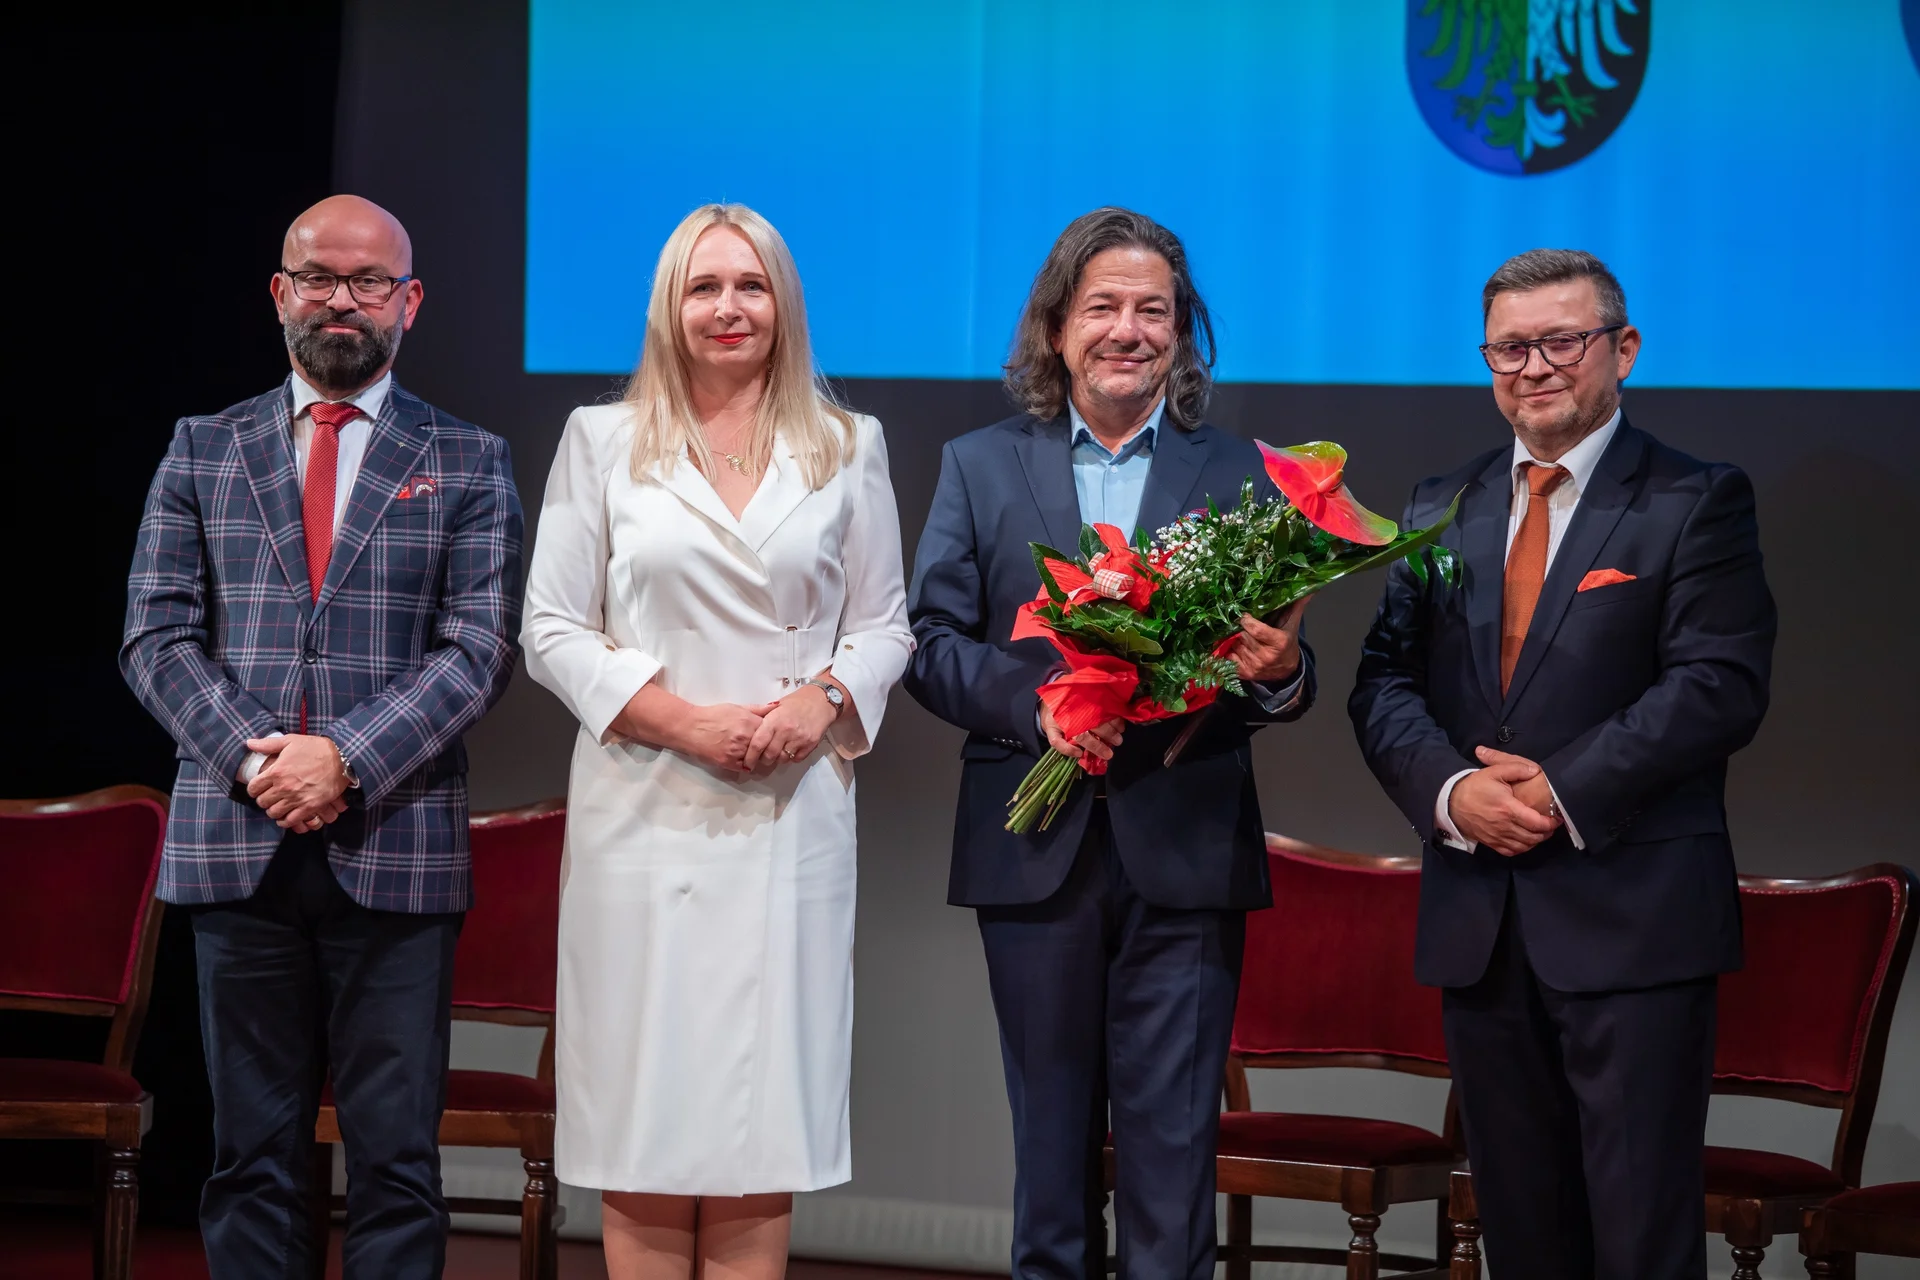  Cztery osoby stoją na scenie, wśród nich Witold Mazurkiewicz - dyrektor teatru z bukietem kwiatów. 